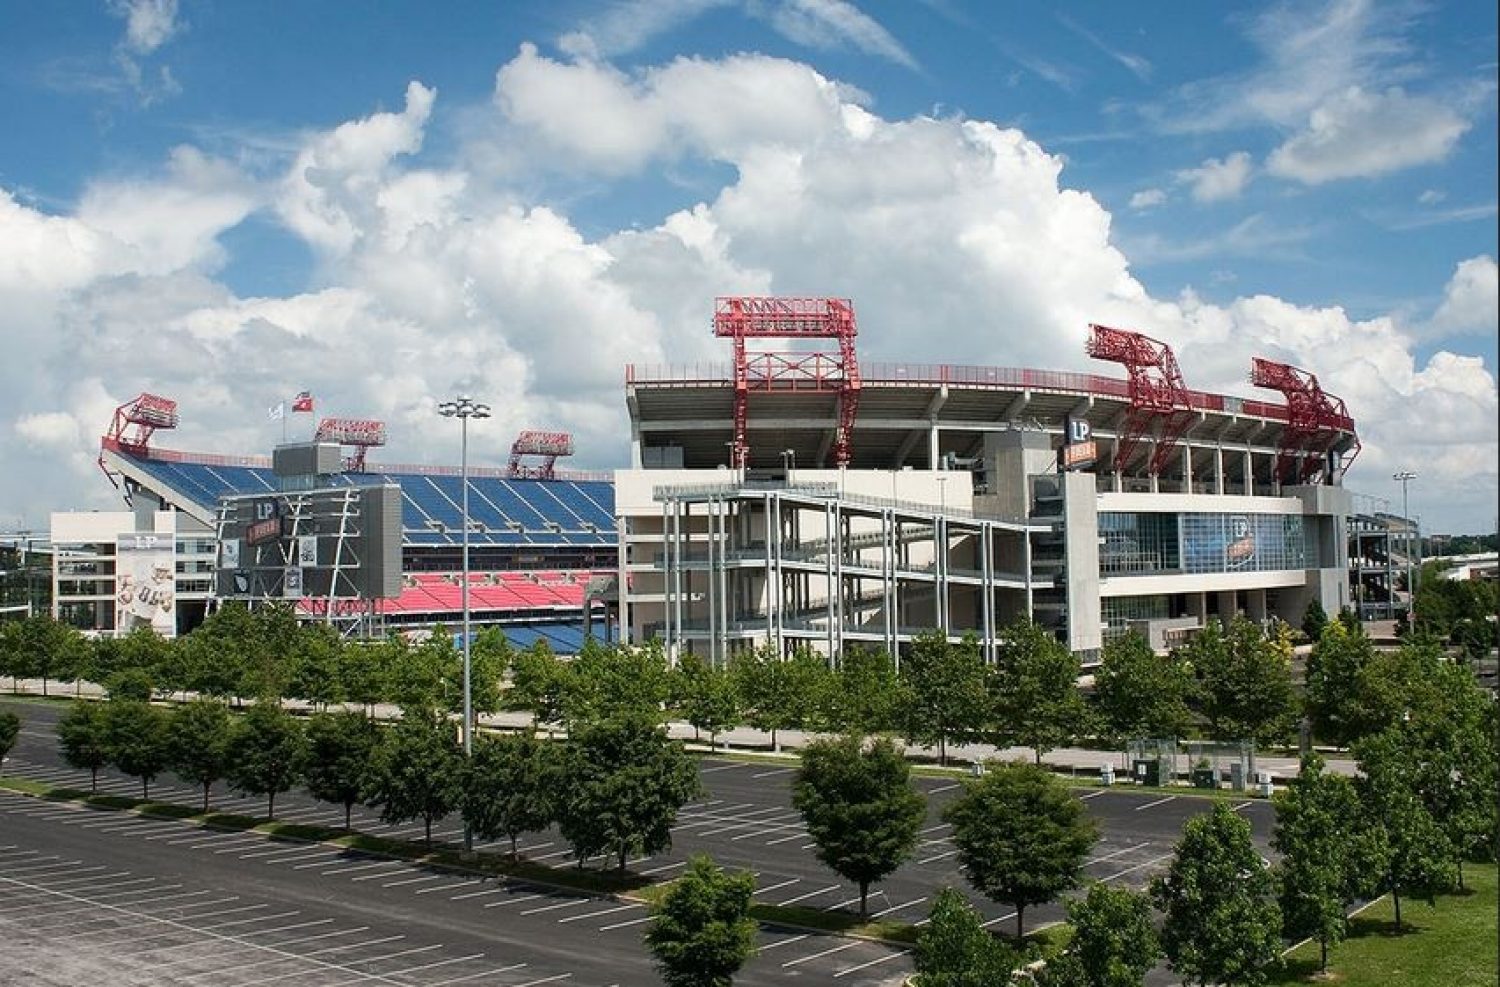 Downtown Nashville viewed from upper decks of Nissan Stadium